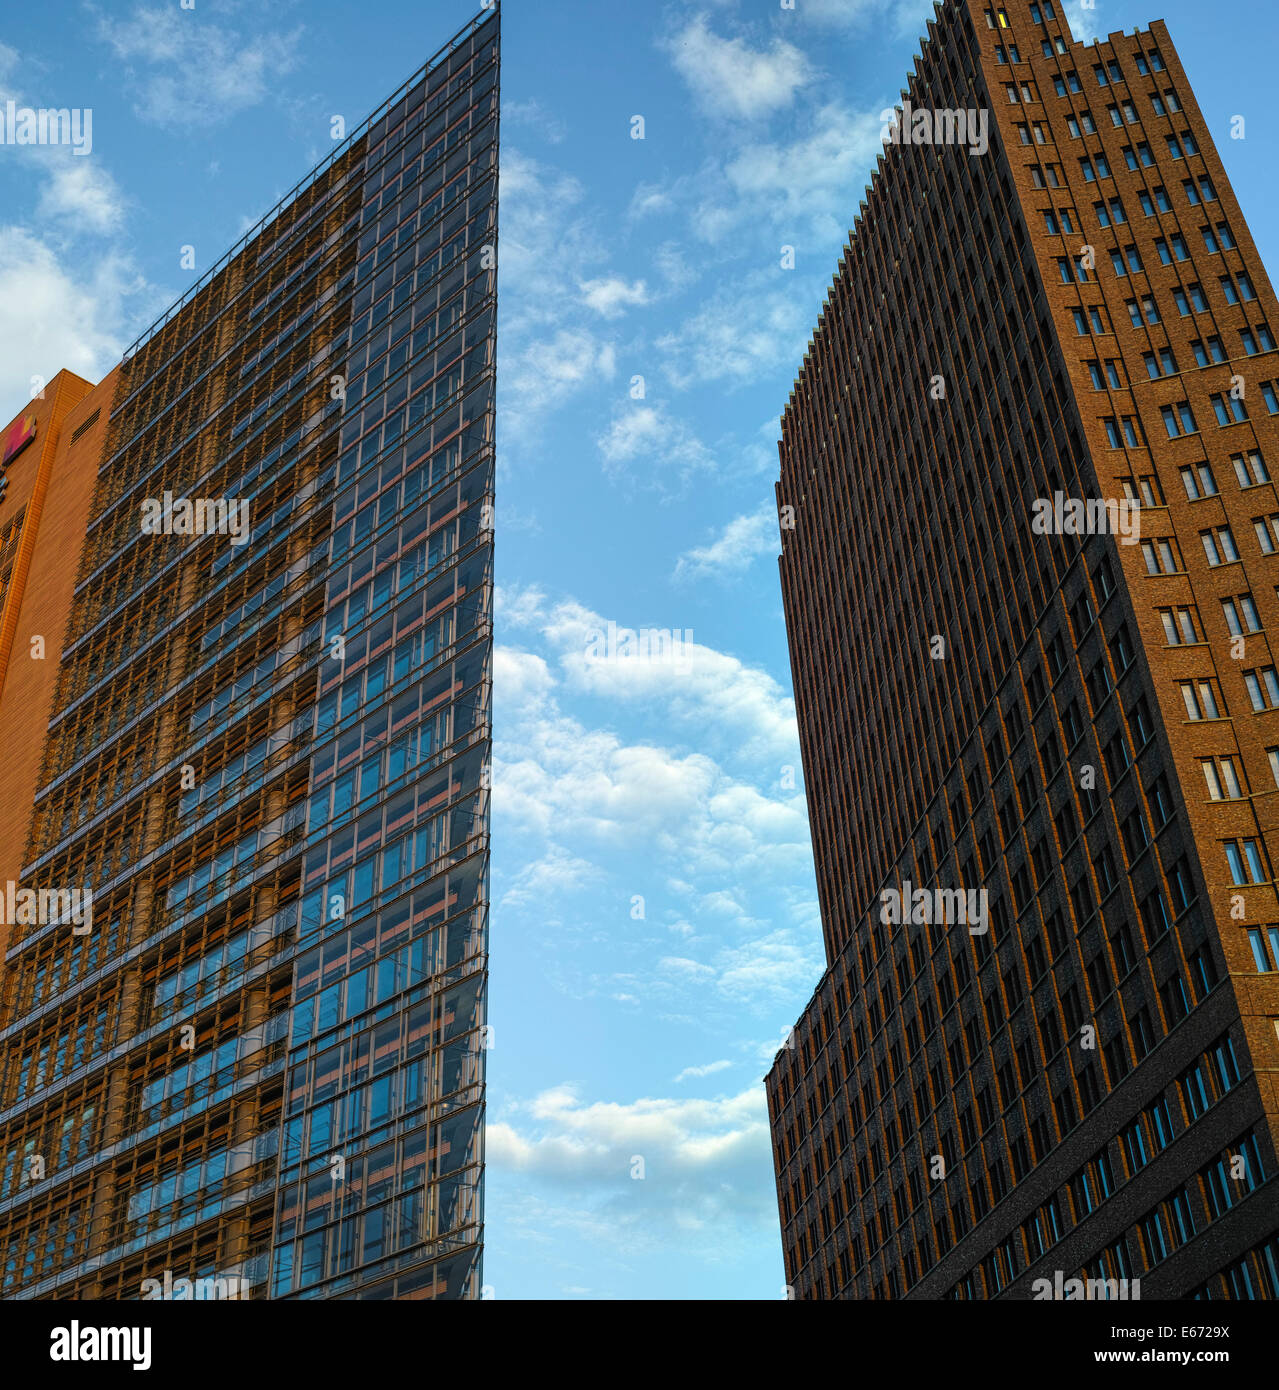 Los rascacielos en Potsdamer Platz, Berlín. A la izquierda el Renzo Piano Building y a la derecha el Kollhoff-Tower. Foto de stock